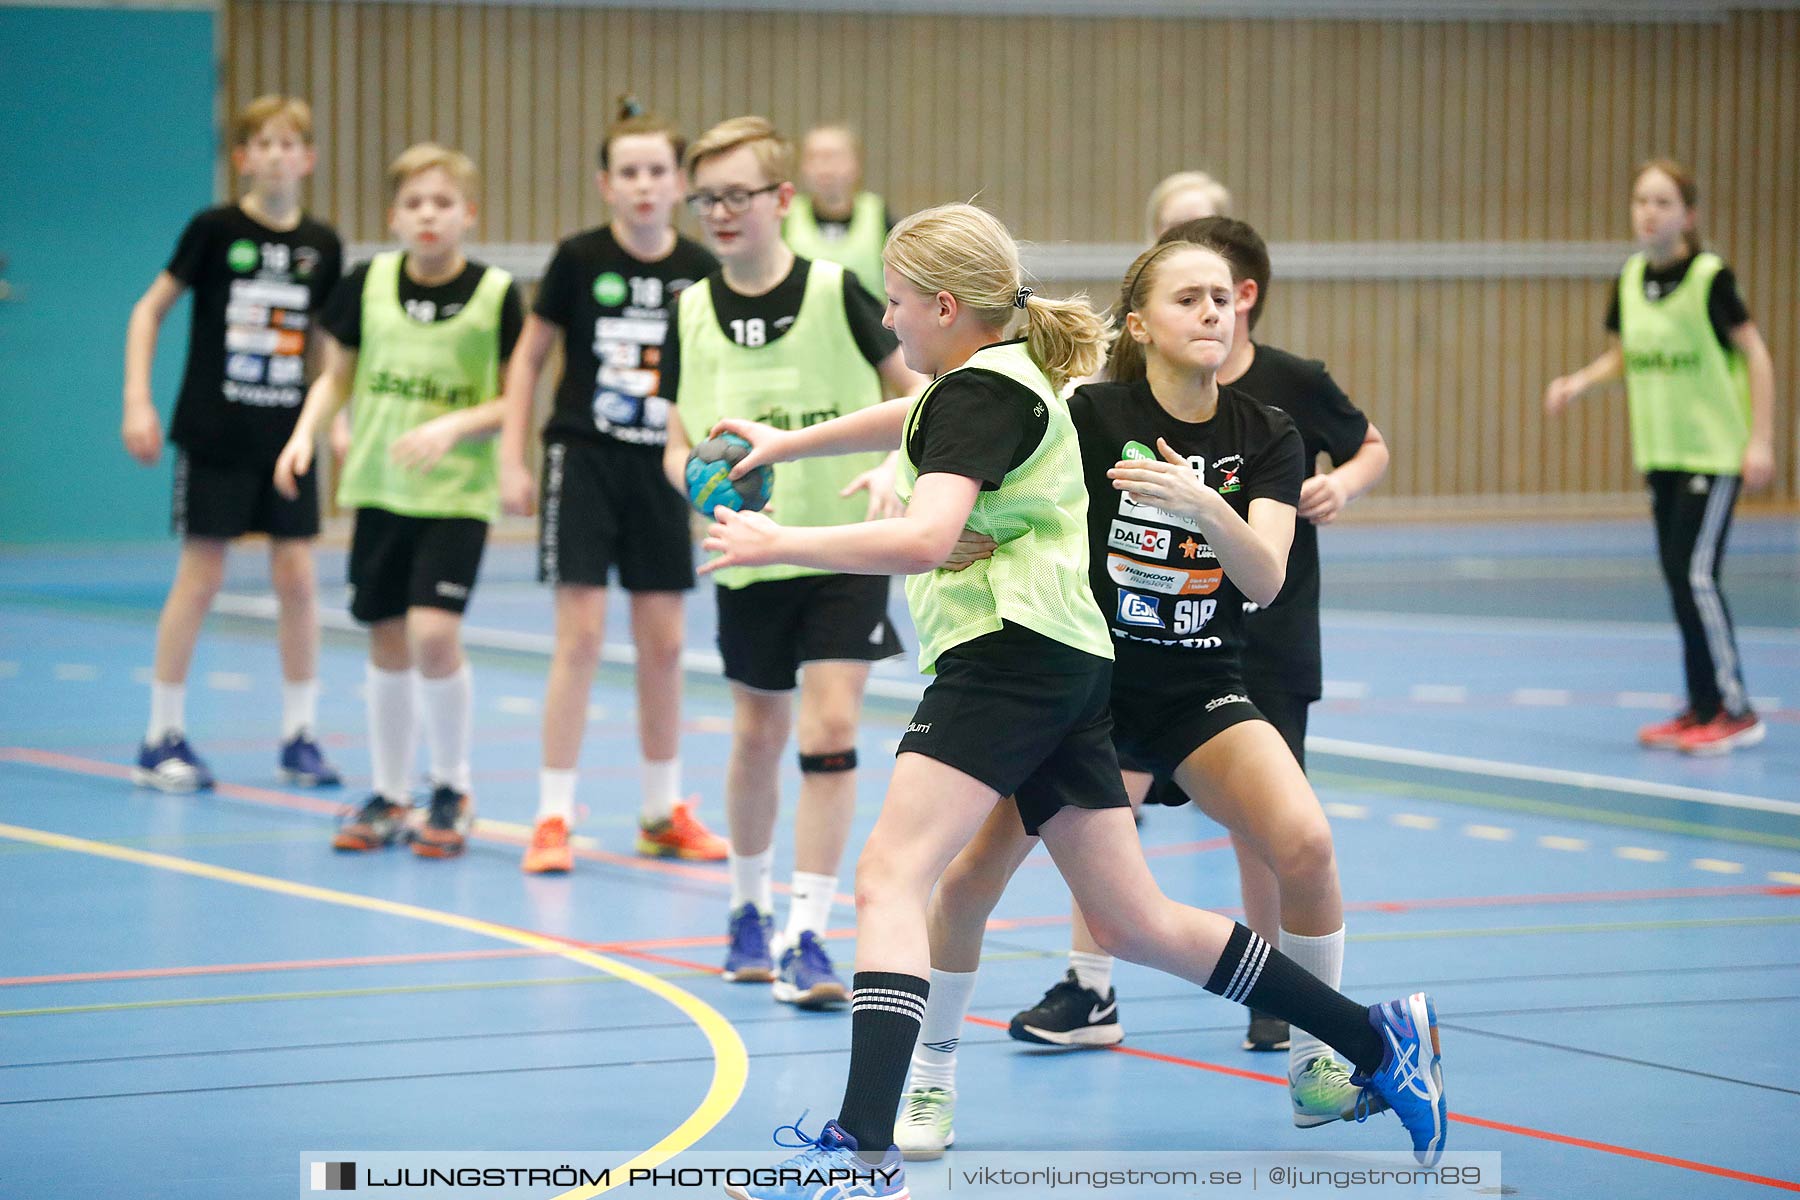 Klasshandboll Skövde 2018 Åldersklass 2006,mix,Arena Skövde,Skövde,Sverige,Handboll,,2018,196150